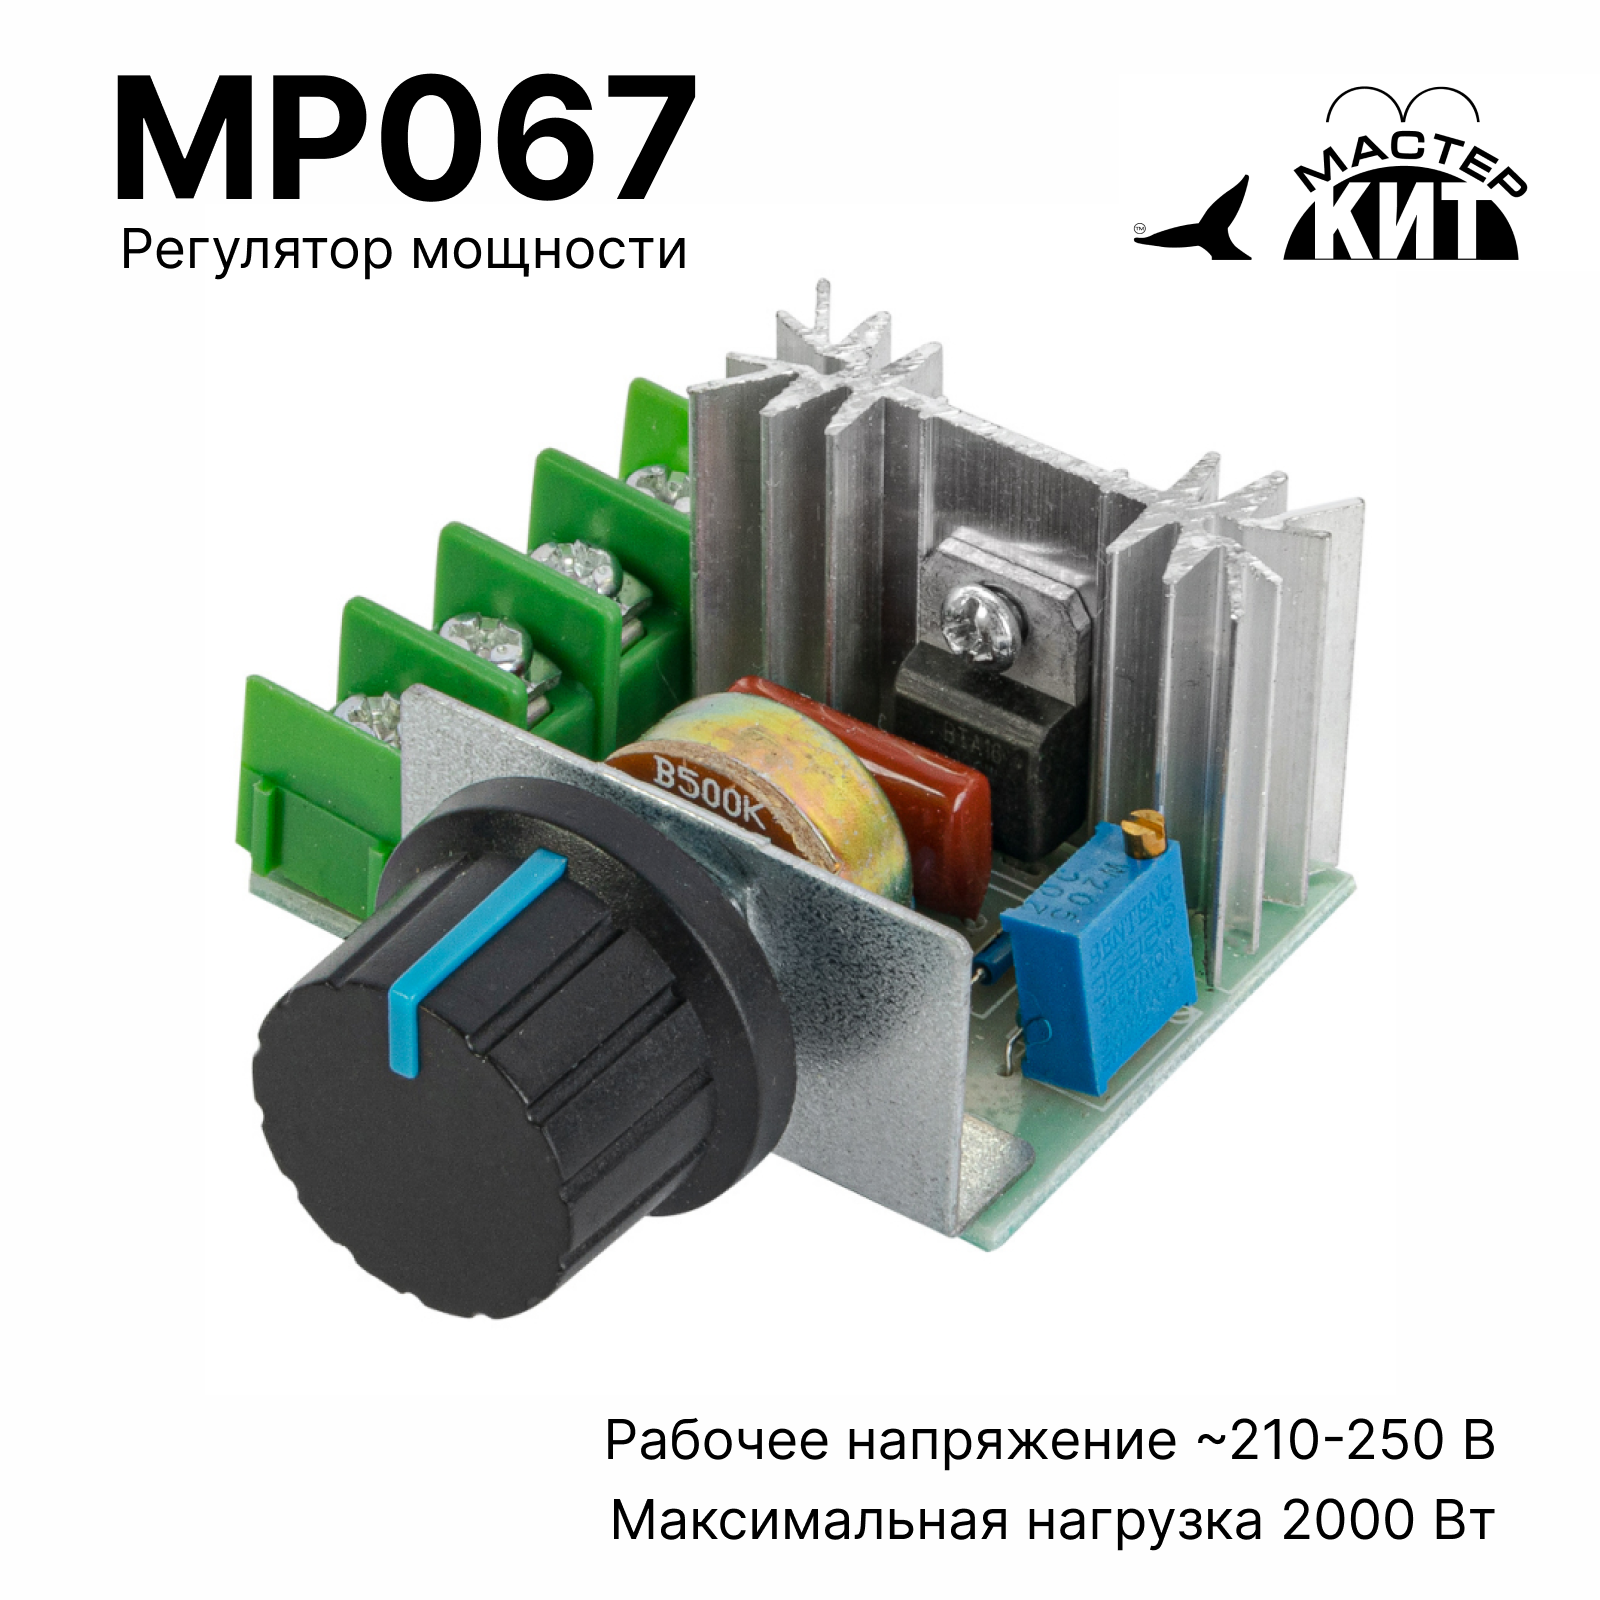 Регулятор мощности Мастер Кит MP067 2 кВт (радиатор, 220В, 9А)